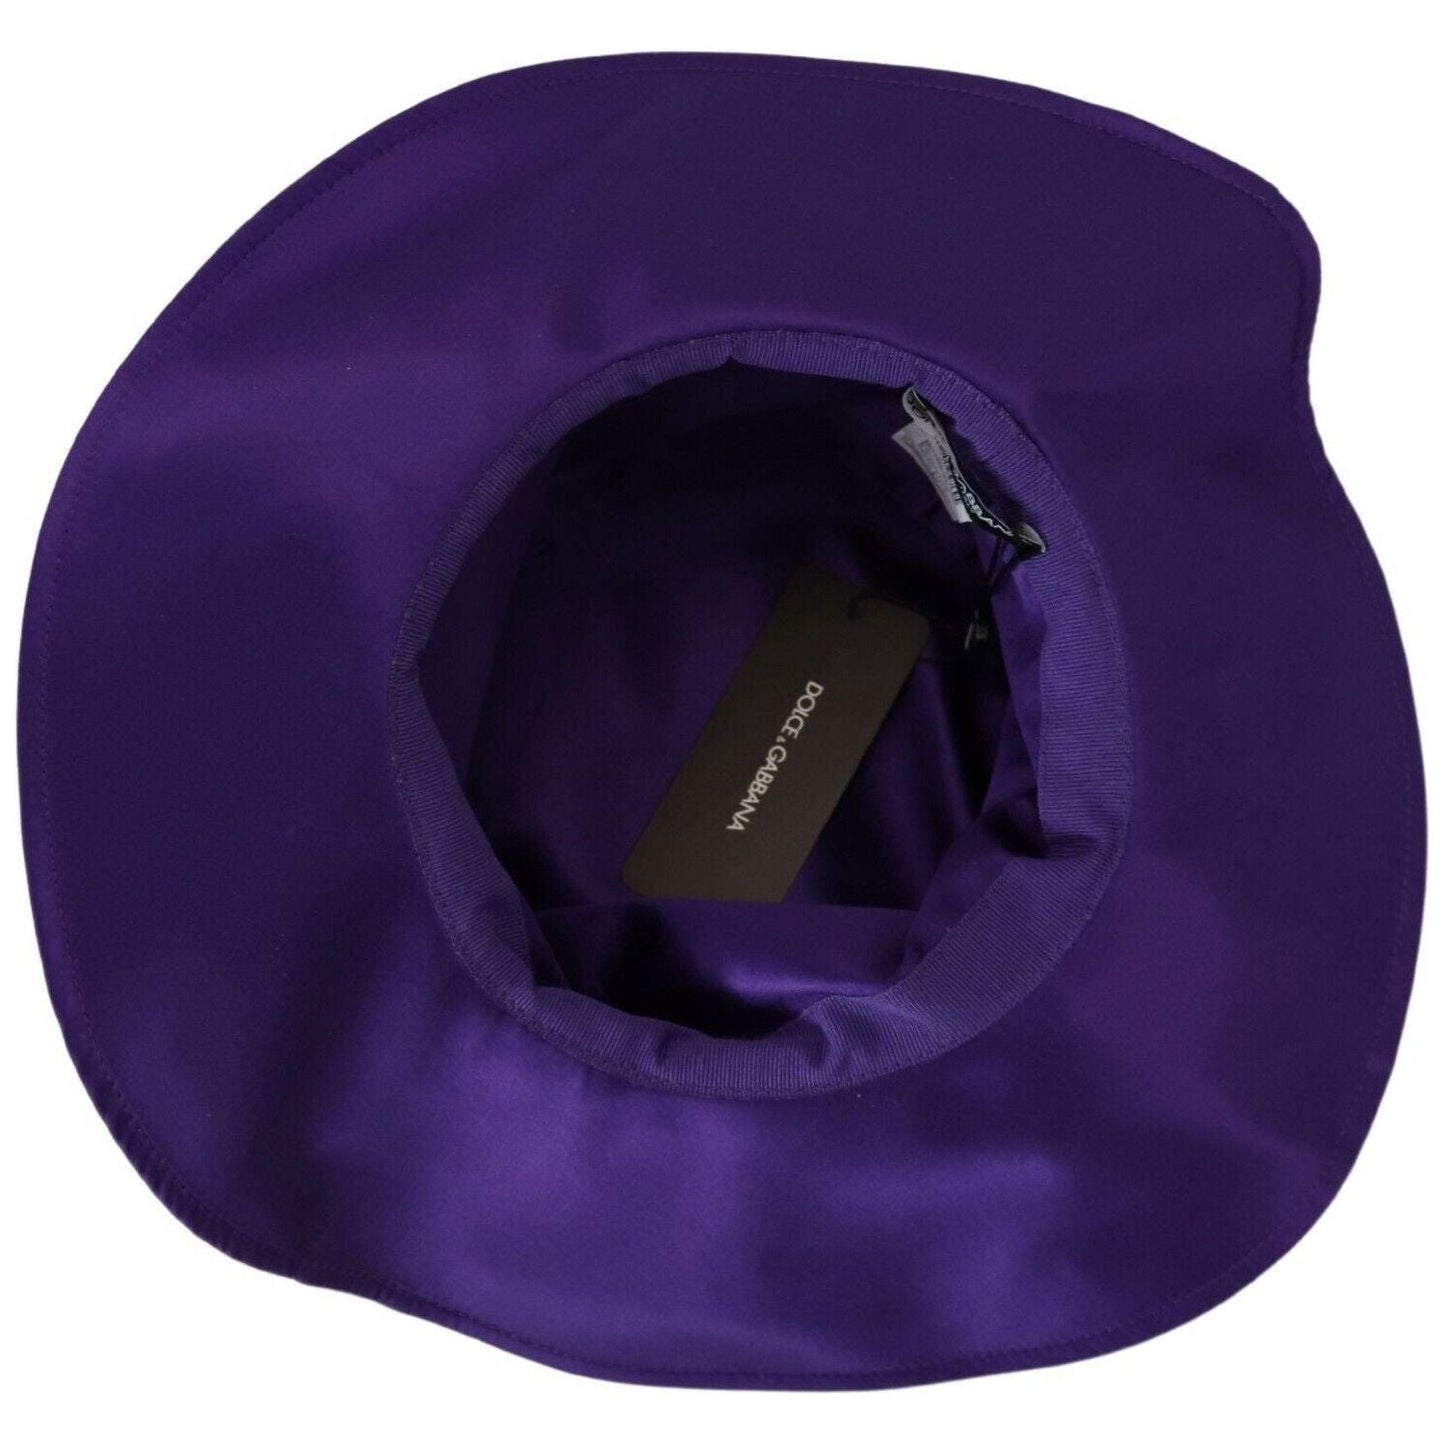 Dolce & Gabbana Elegant Purple Silk Top Hat purple-silk-stretch-top-hat s-l1600-75-3-4c3c241c-e92.jpg